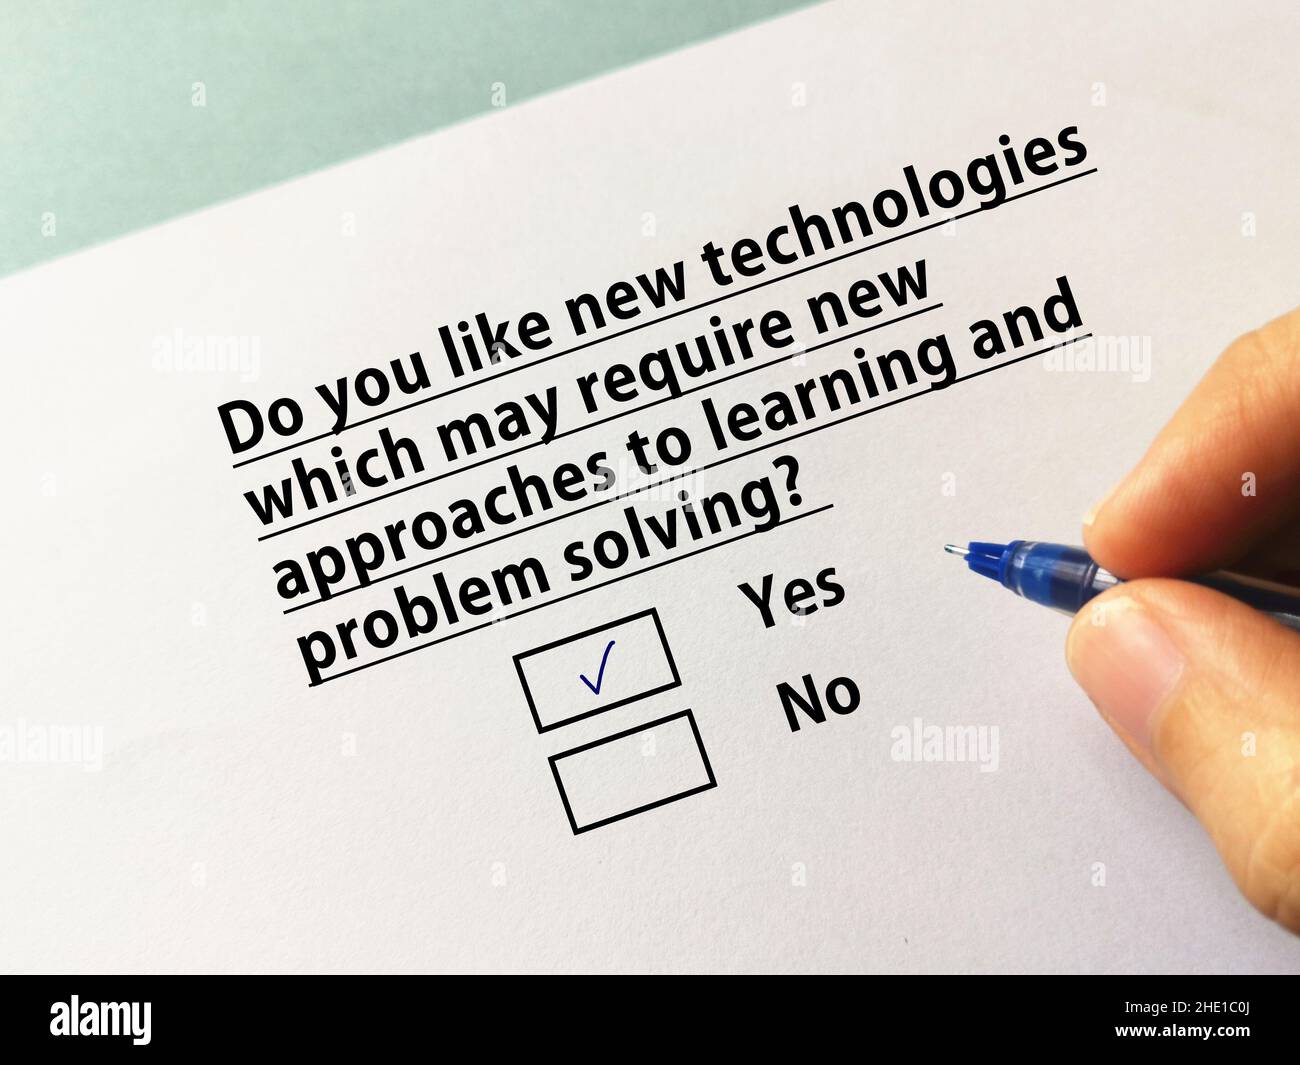 Une personne répond à une question sur l'apprentissage en ligne.La personne aime les nouvelles technologies qui peuvent nécessiter de nouvelles approches d'apprentissage et de sol problématique Banque D'Images